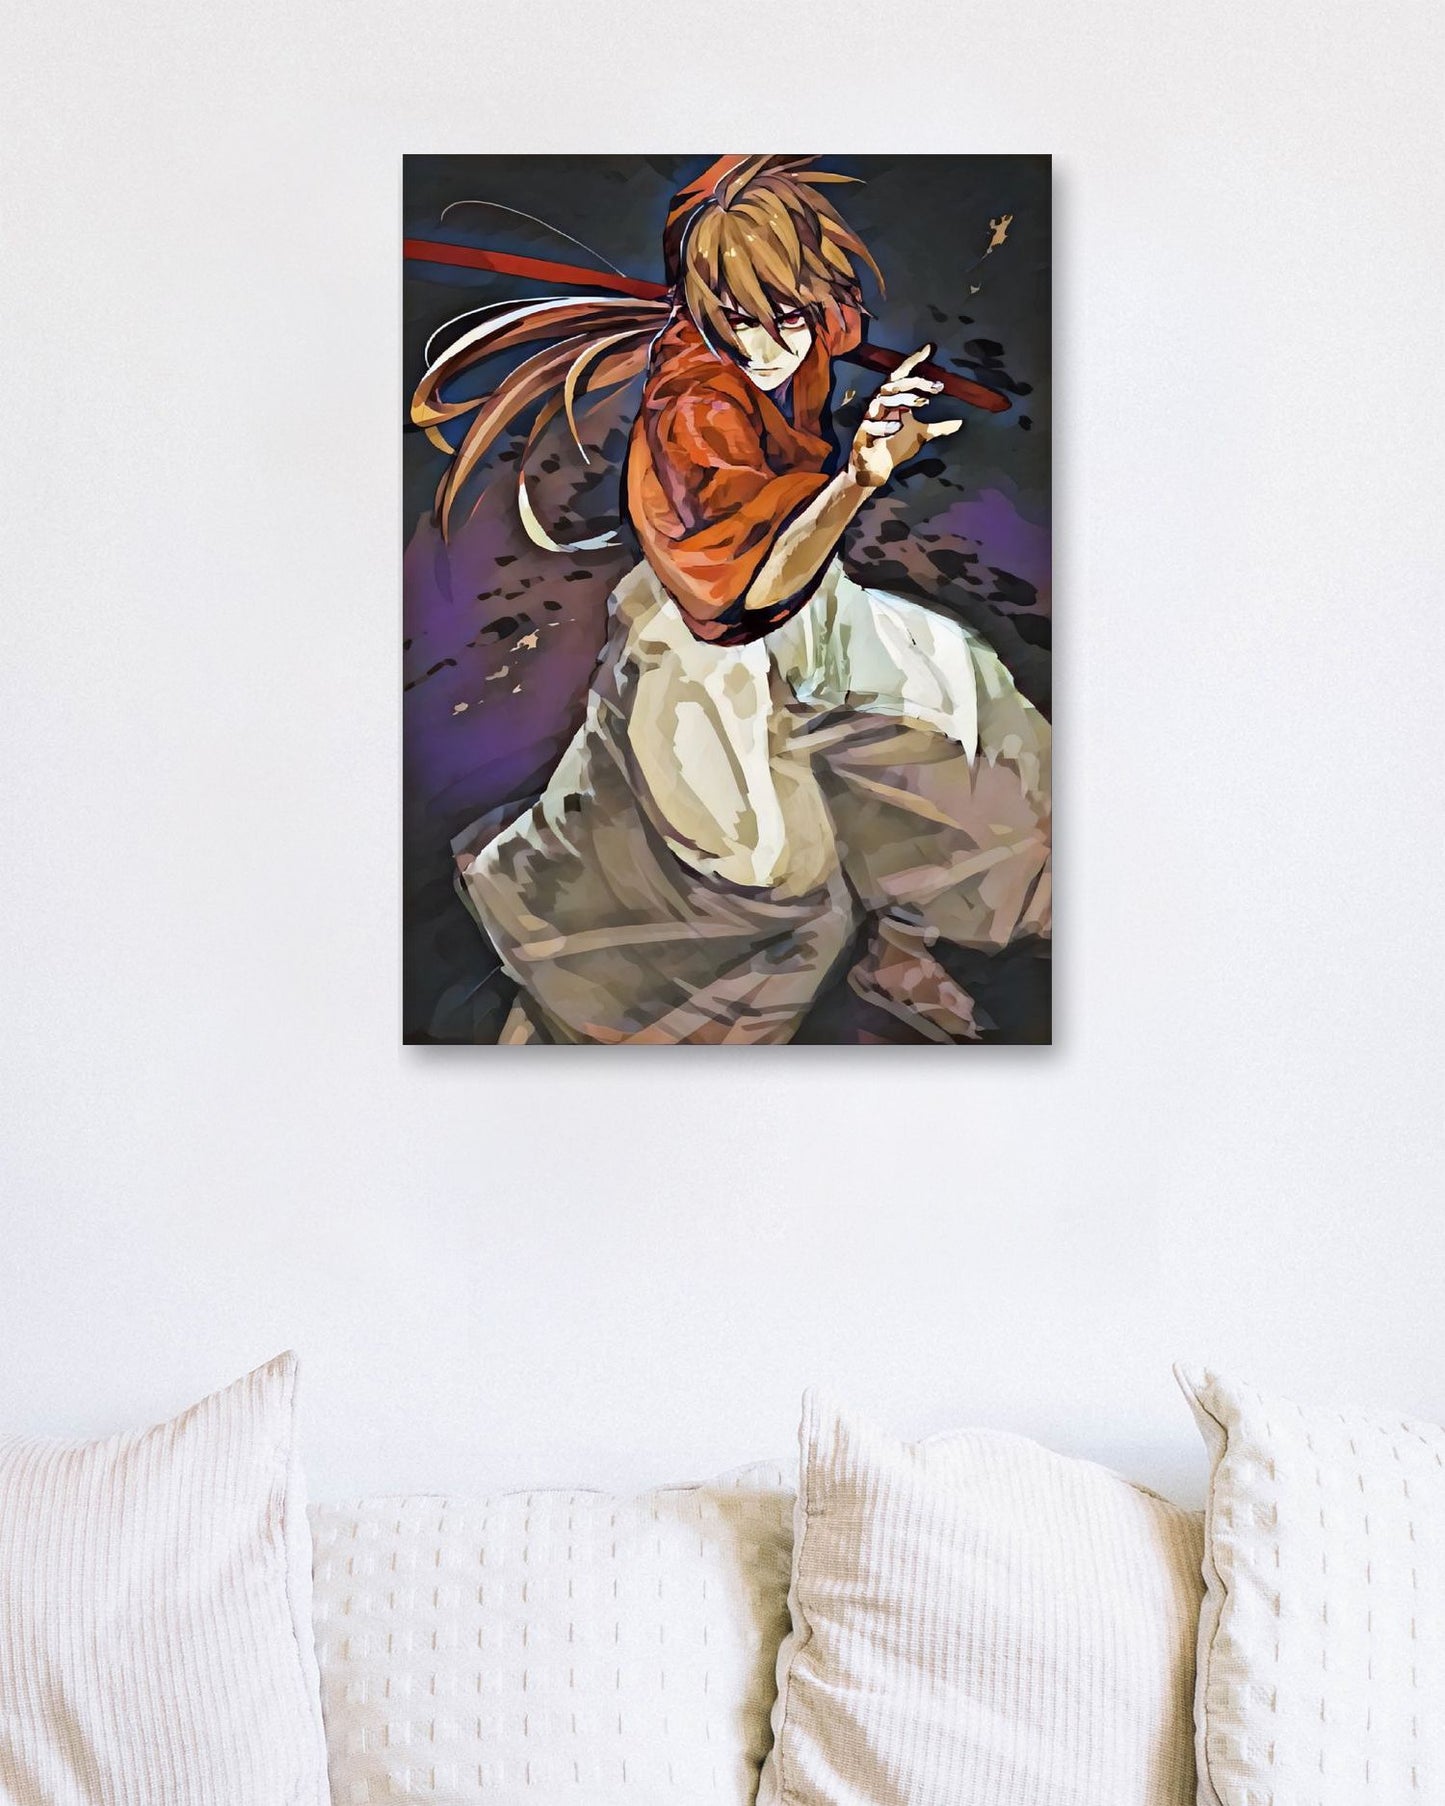 Rurouni Kenshin 5 - @JongKlebesGallery